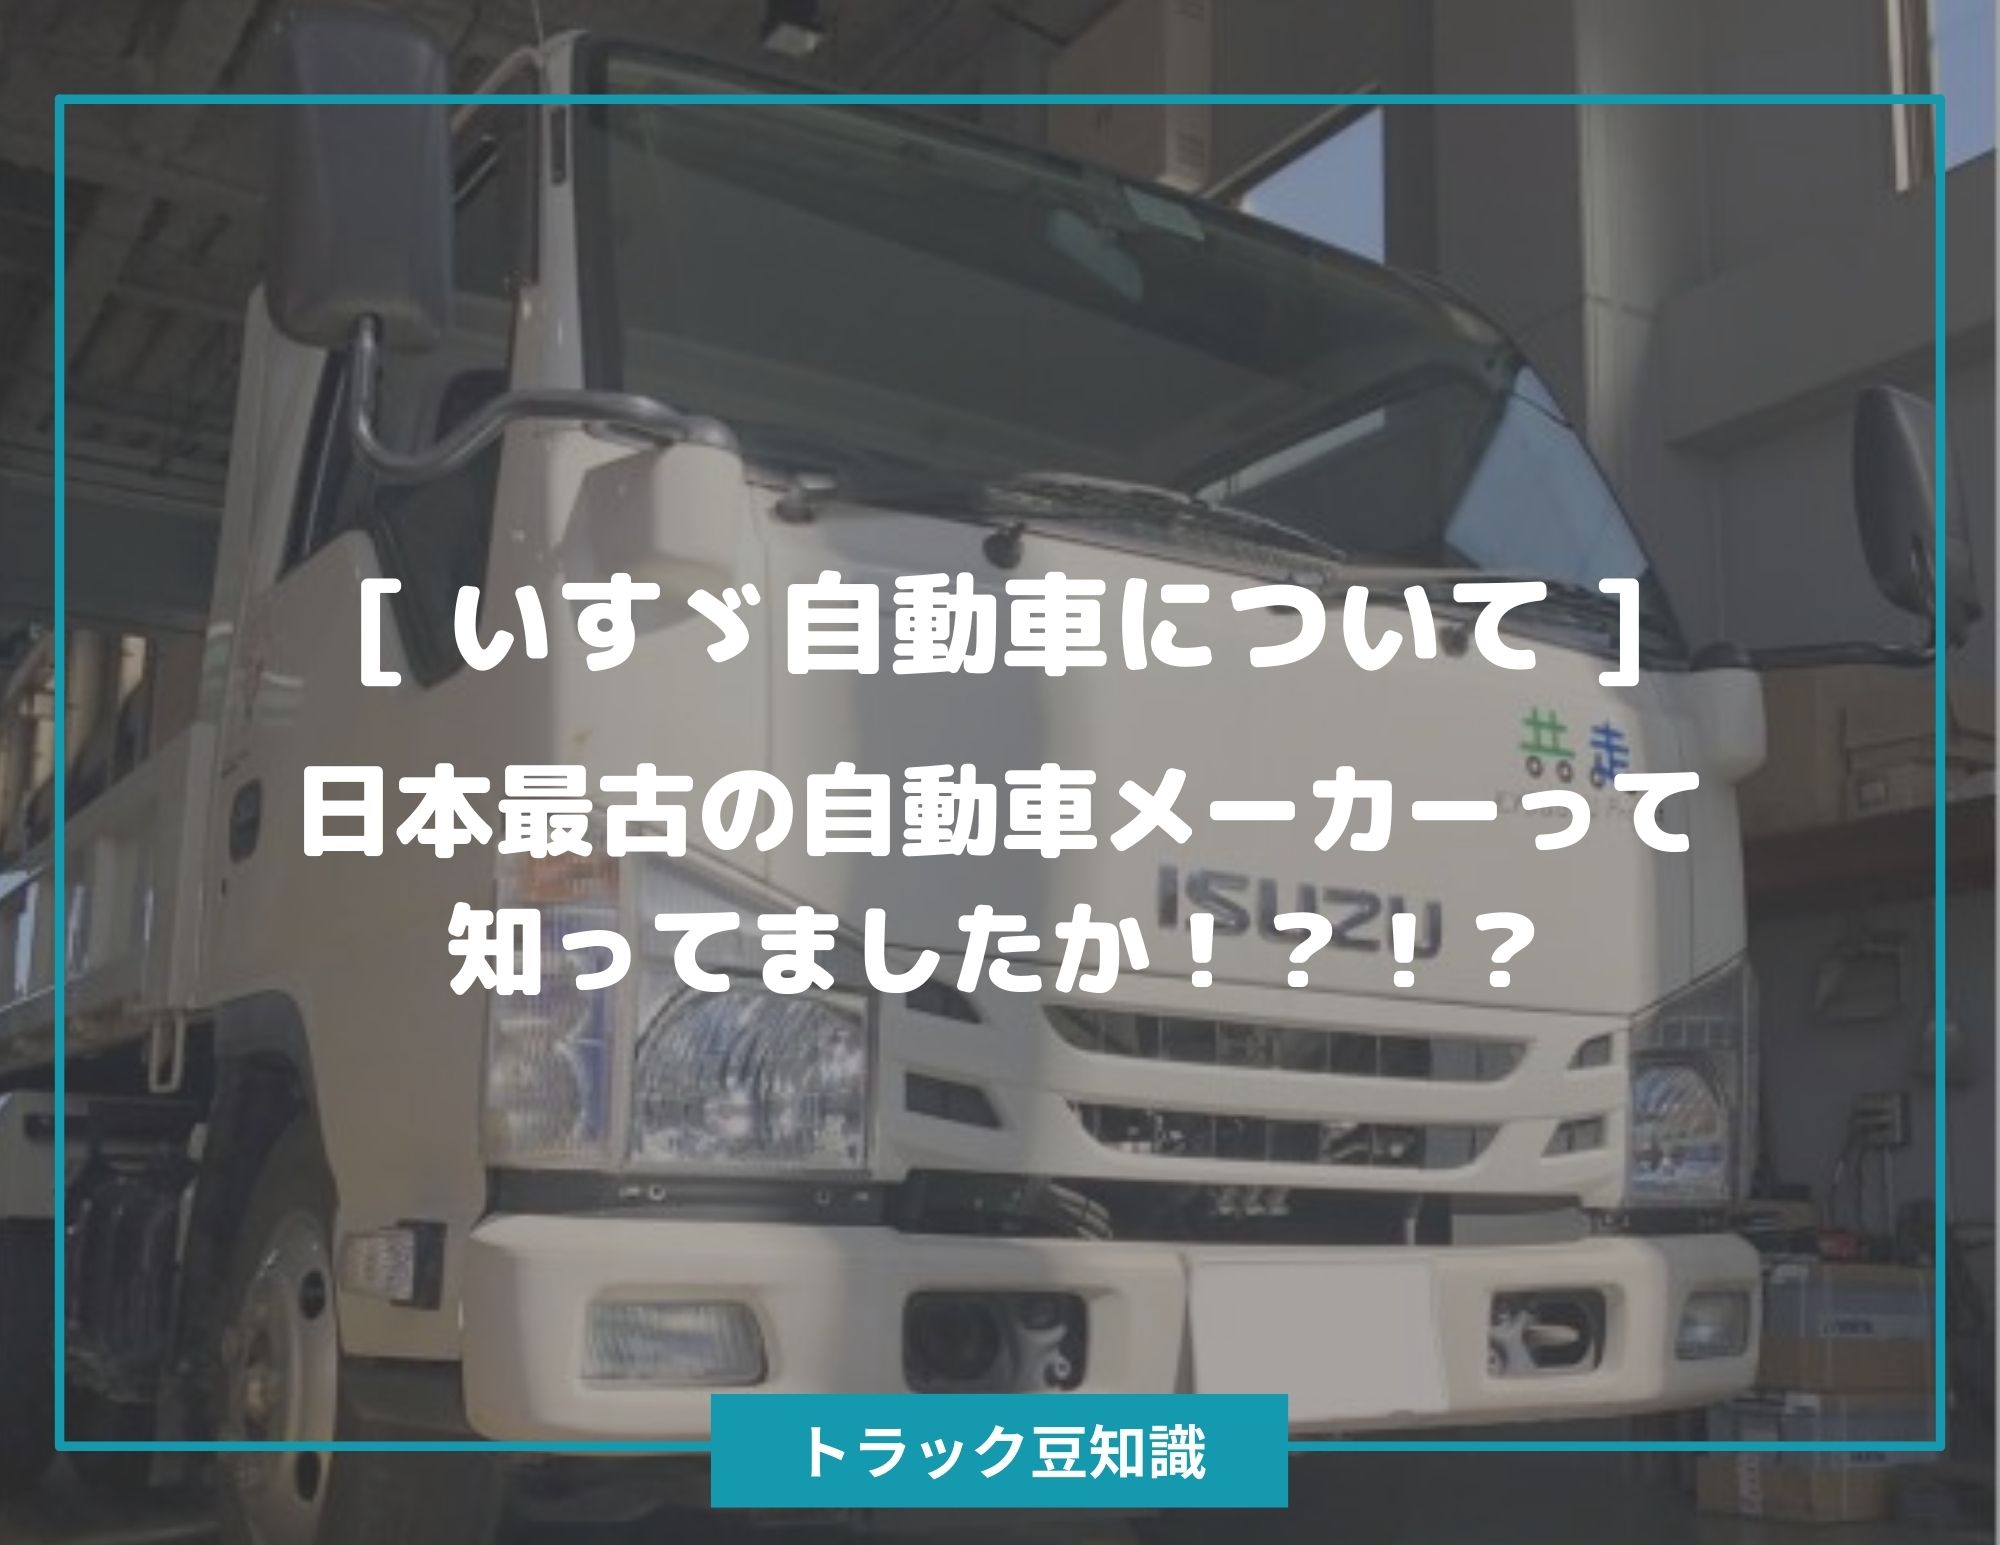 いすゞ自動車について 日本最古の自動車メーカーって知ってましたか トラック豆知識 中古トラックのヨシノ自動車